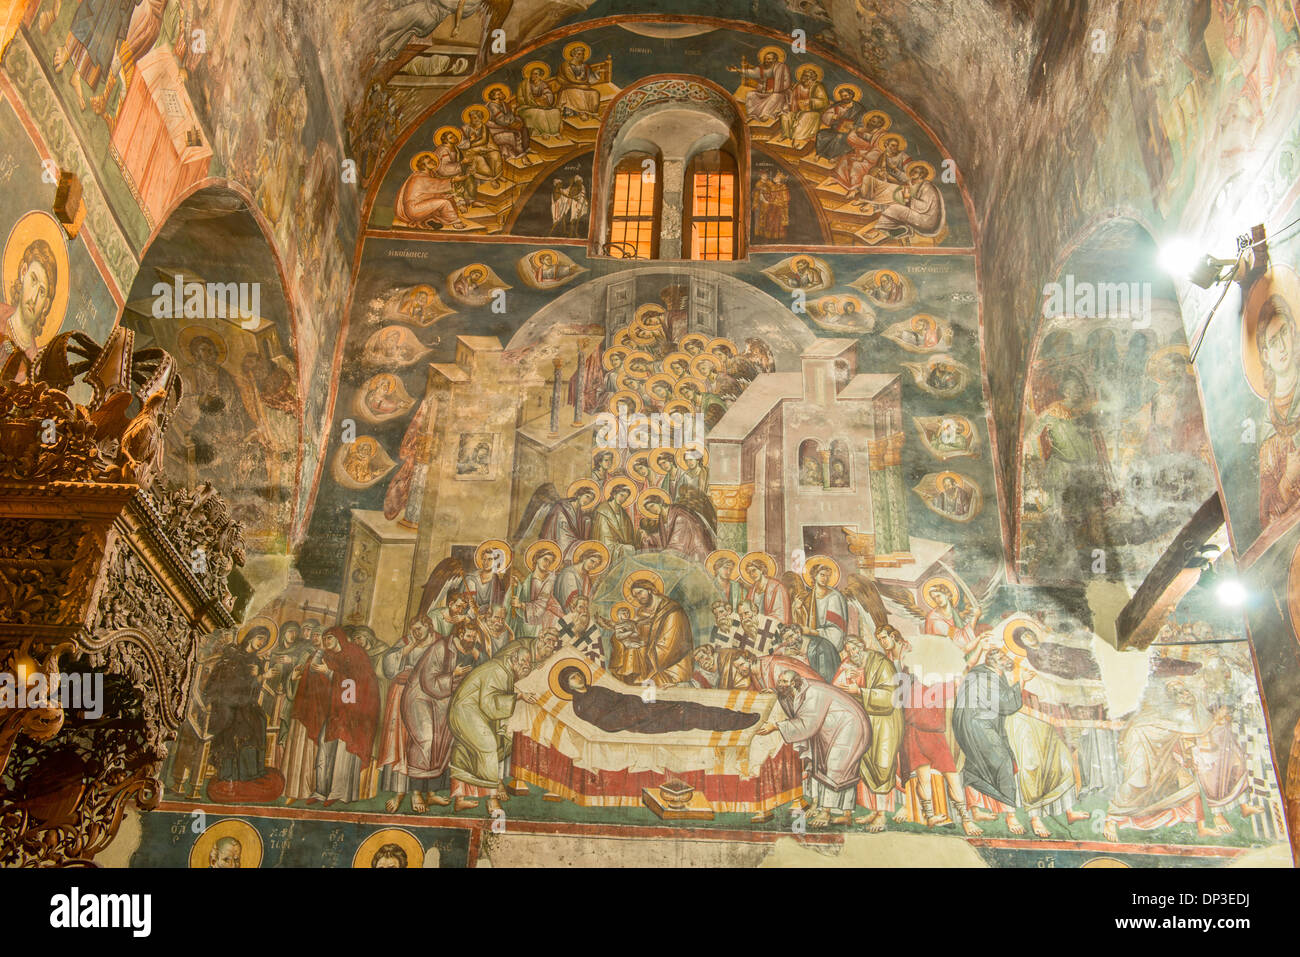 Frescos en las paredes de la iglesia Santa Madre de Dios Peribleptos Iglesia Macedonia Ohrid construido en 1295 ejemplos de frescos bizantinos Foto de stock